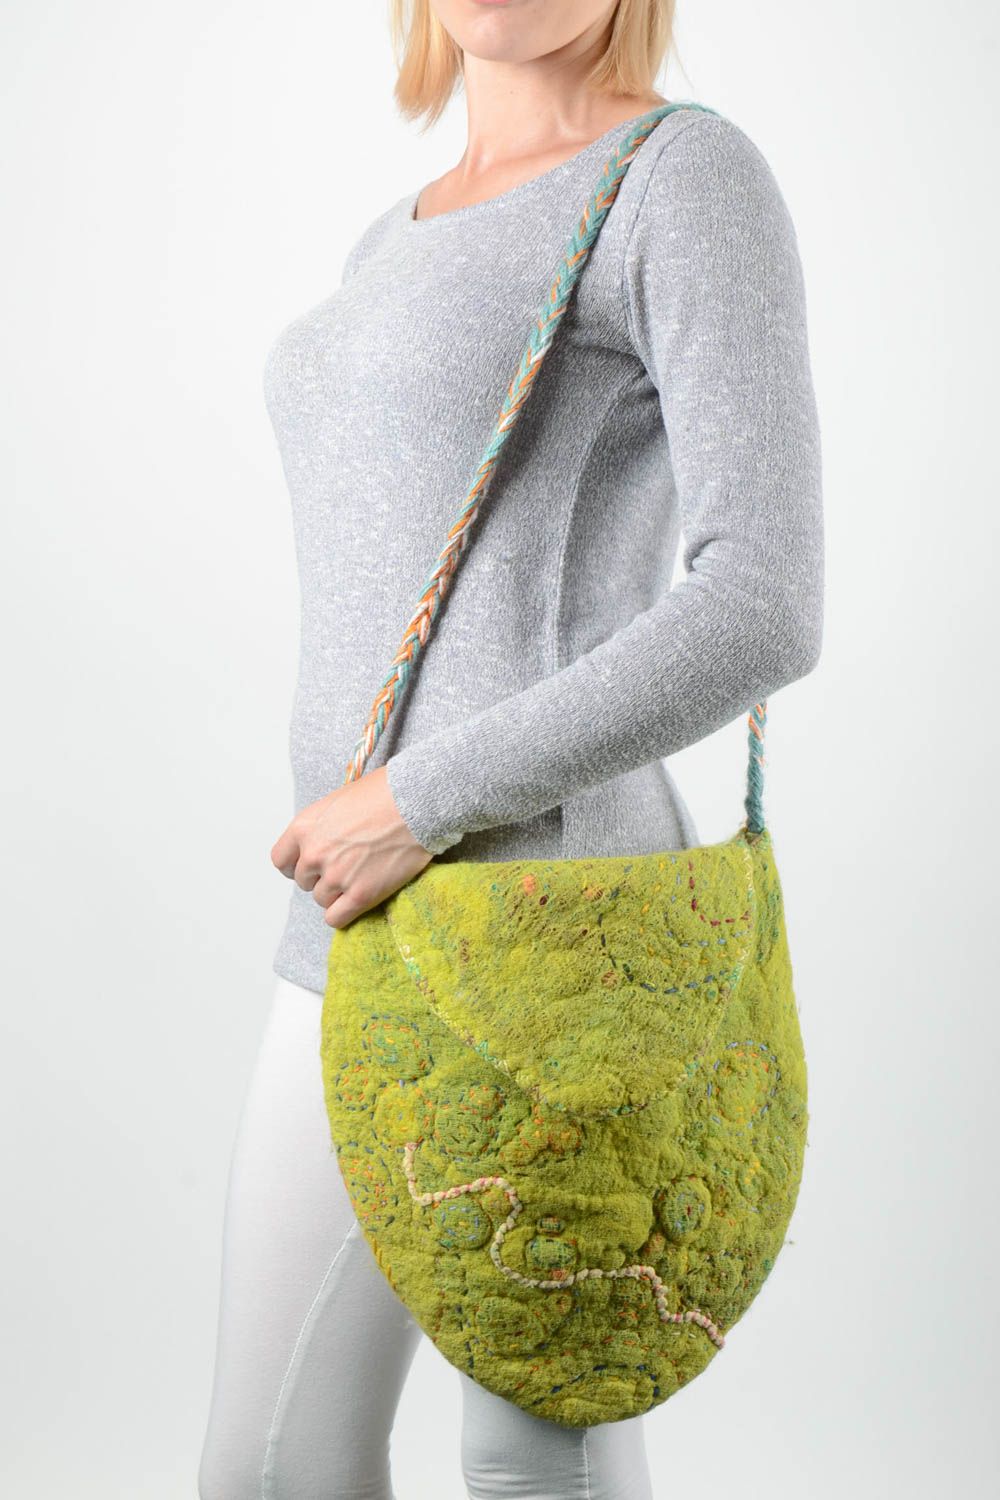 Сумка ручной работы женская сумка зеленая через плечо из шерсти сумка валяние фото 1